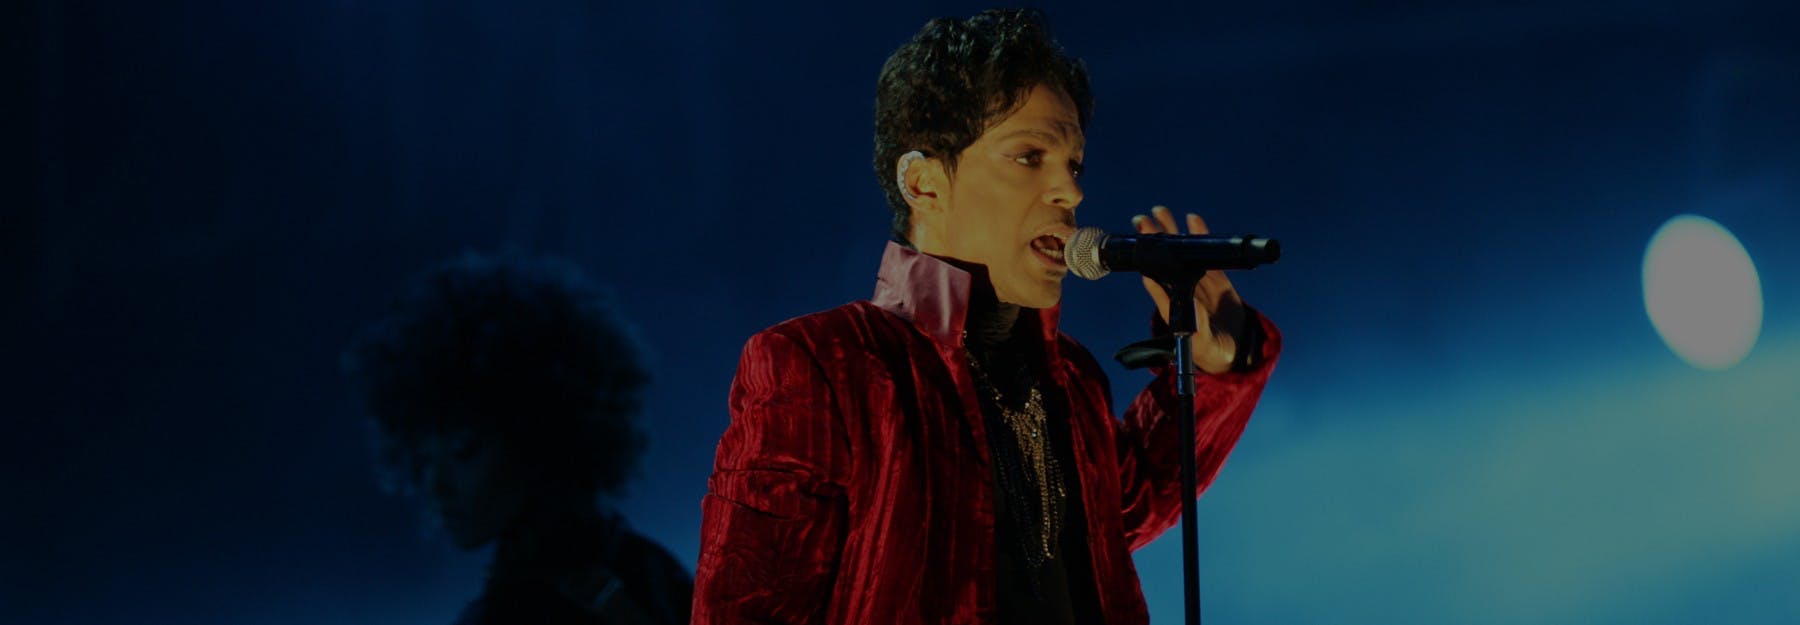 Prince ist tot — diese Songs bleiben!